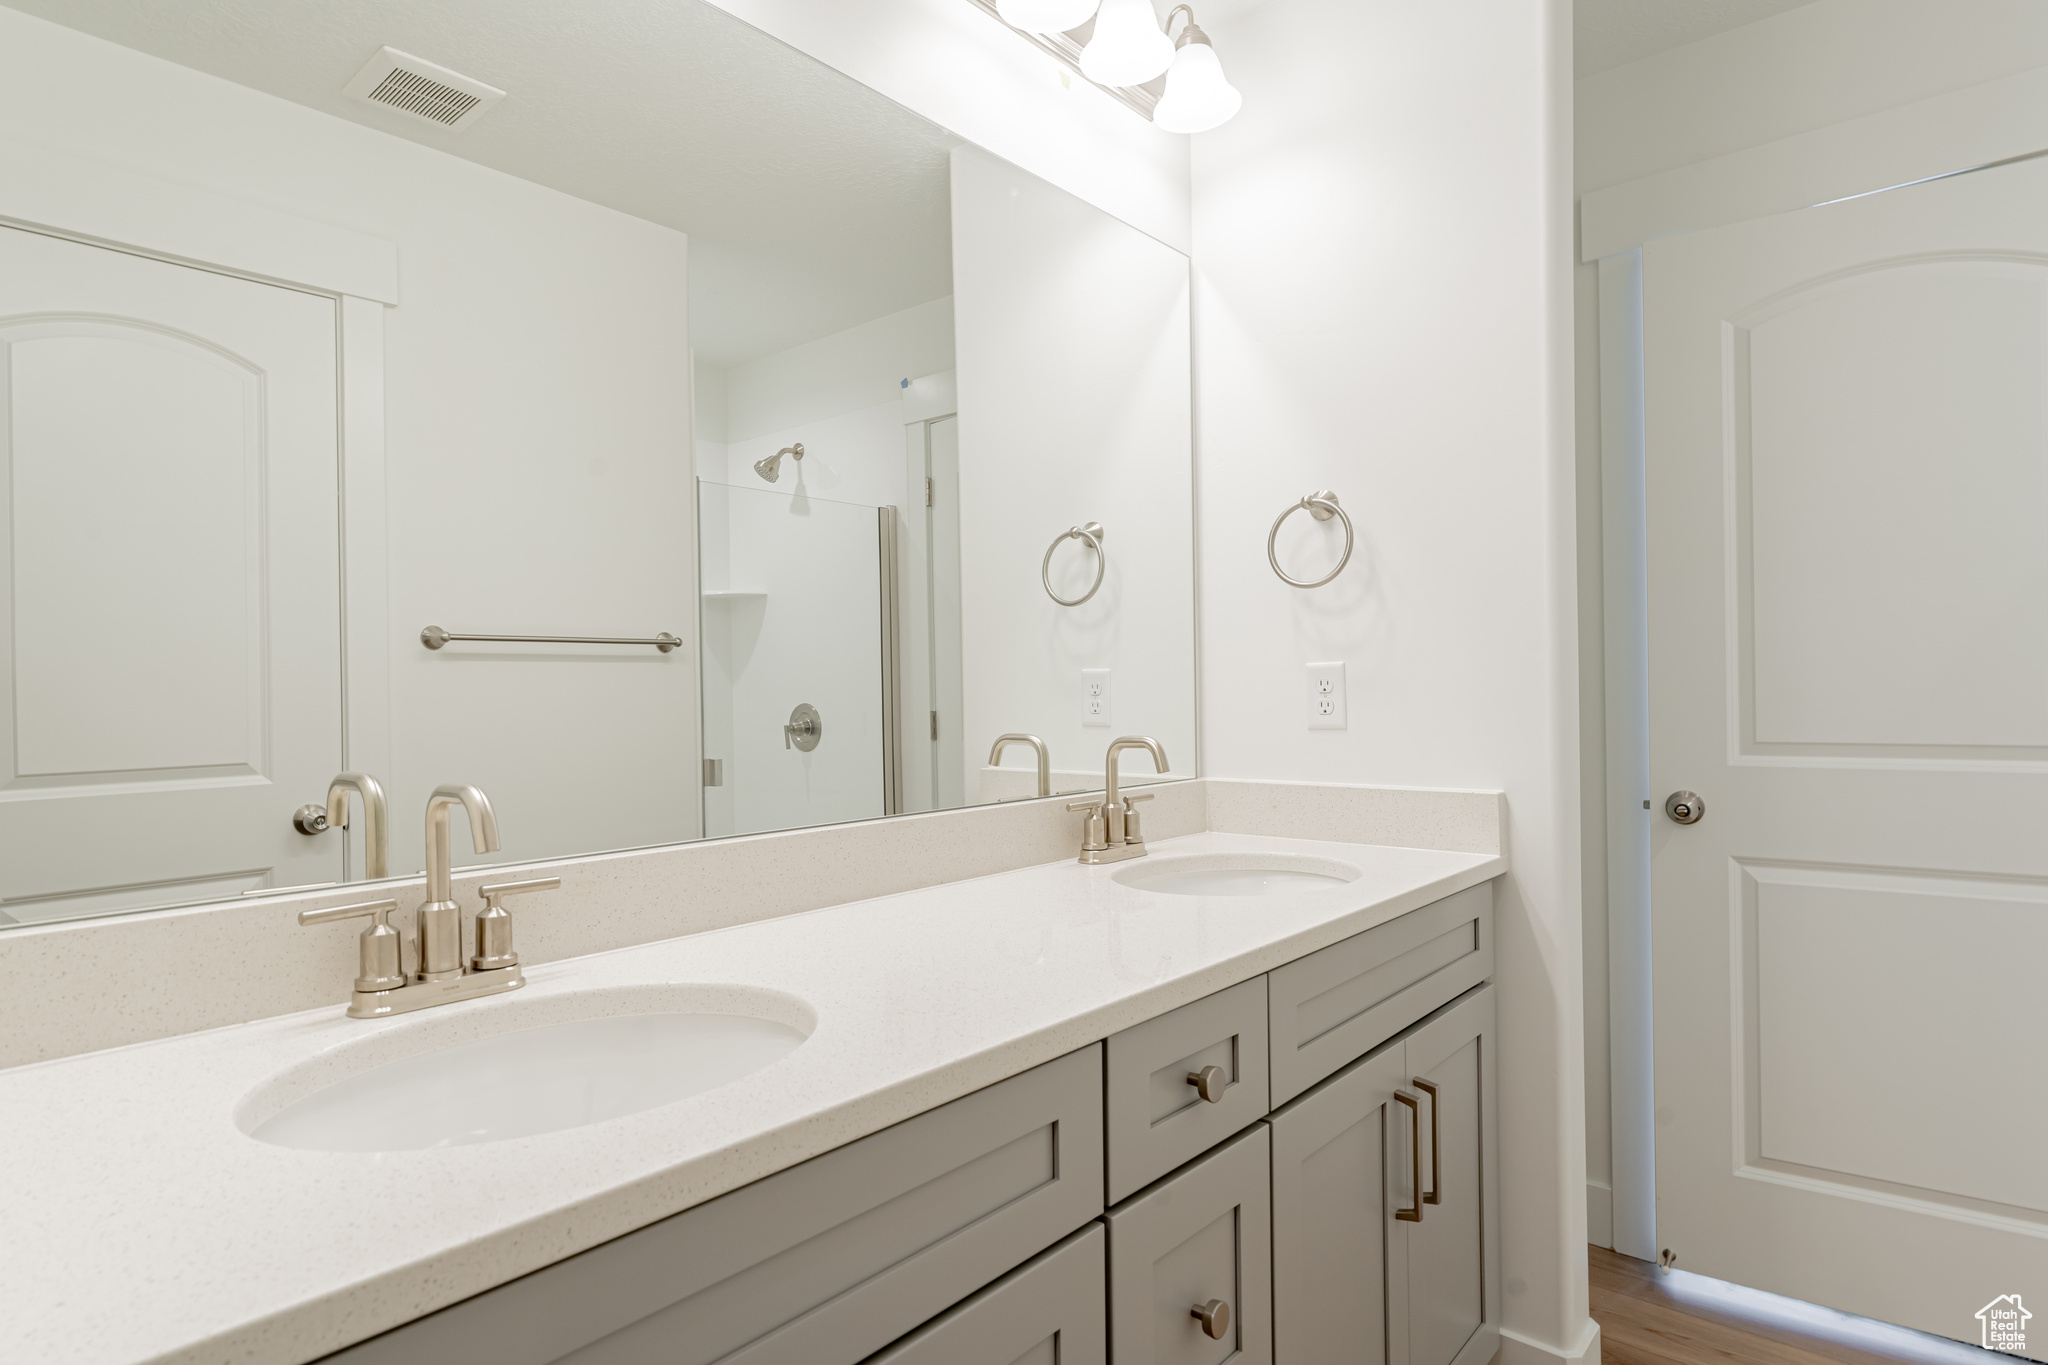 Bathroom featuring large vanity, dual sinks, and hardwood / wood-style floors